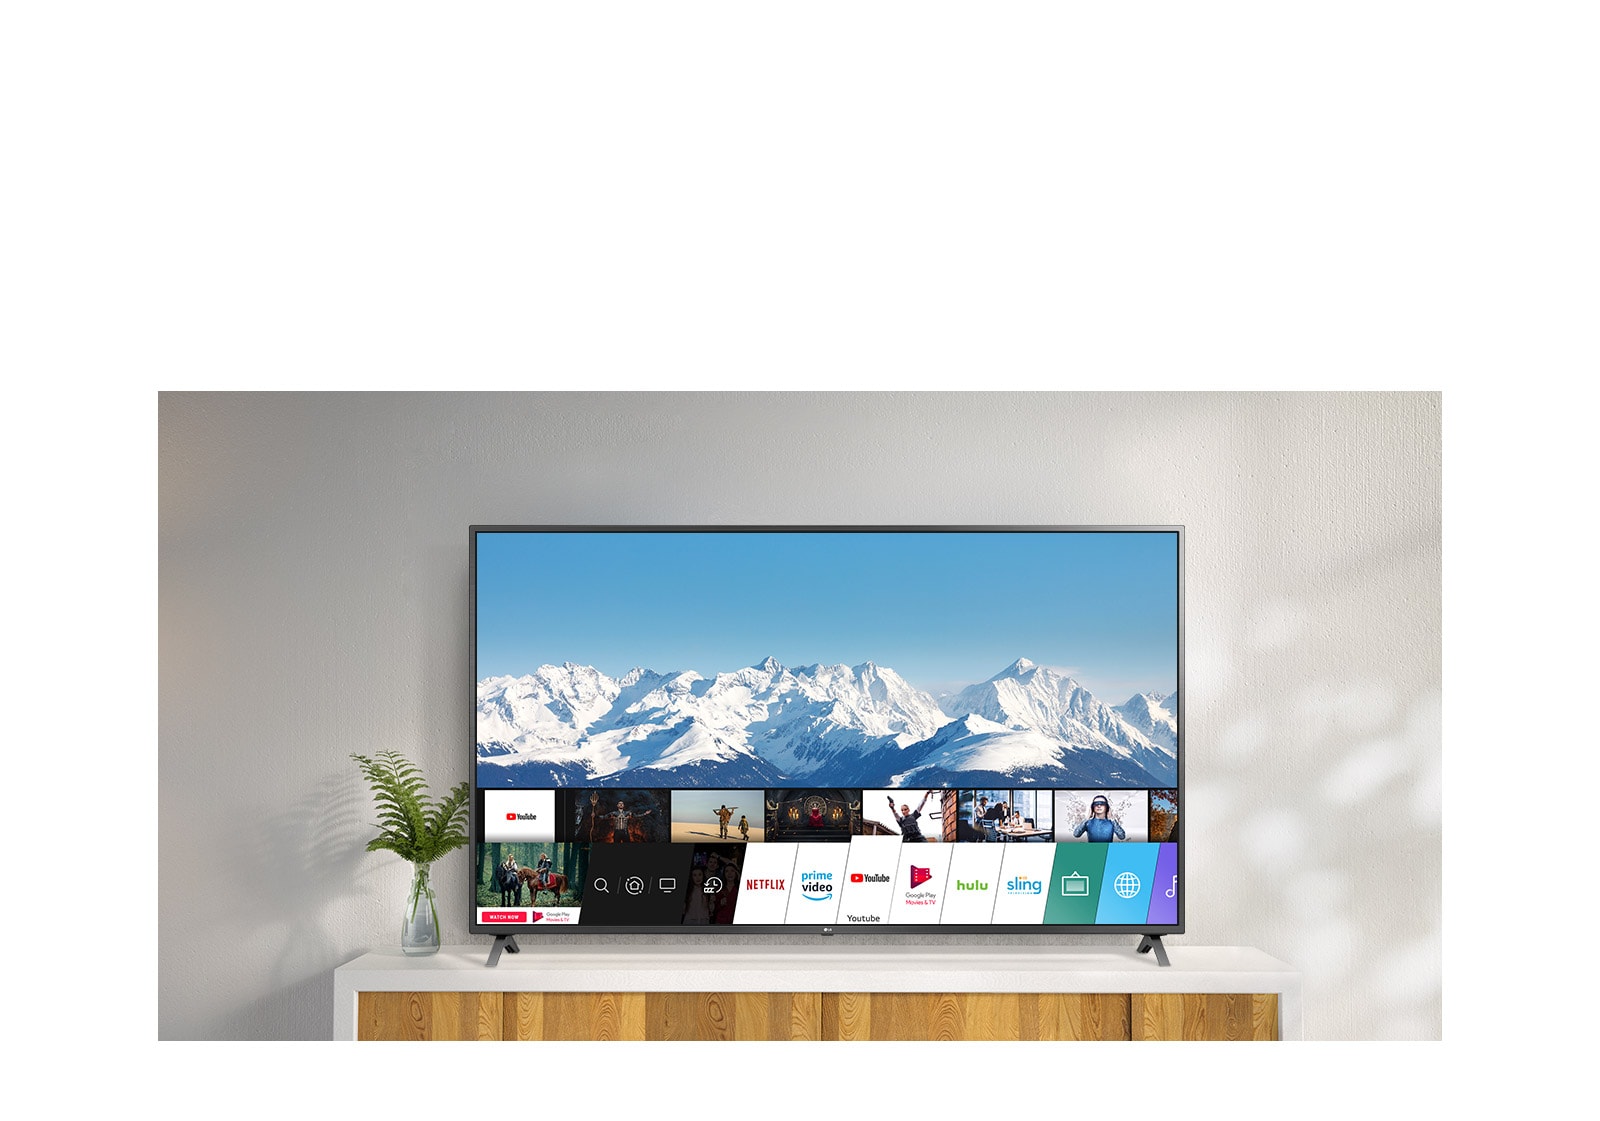 TV debout sur un support blanc contre un mur blanc. L'écran du téléviseur affiche l'écran d'accueil avec webOS.